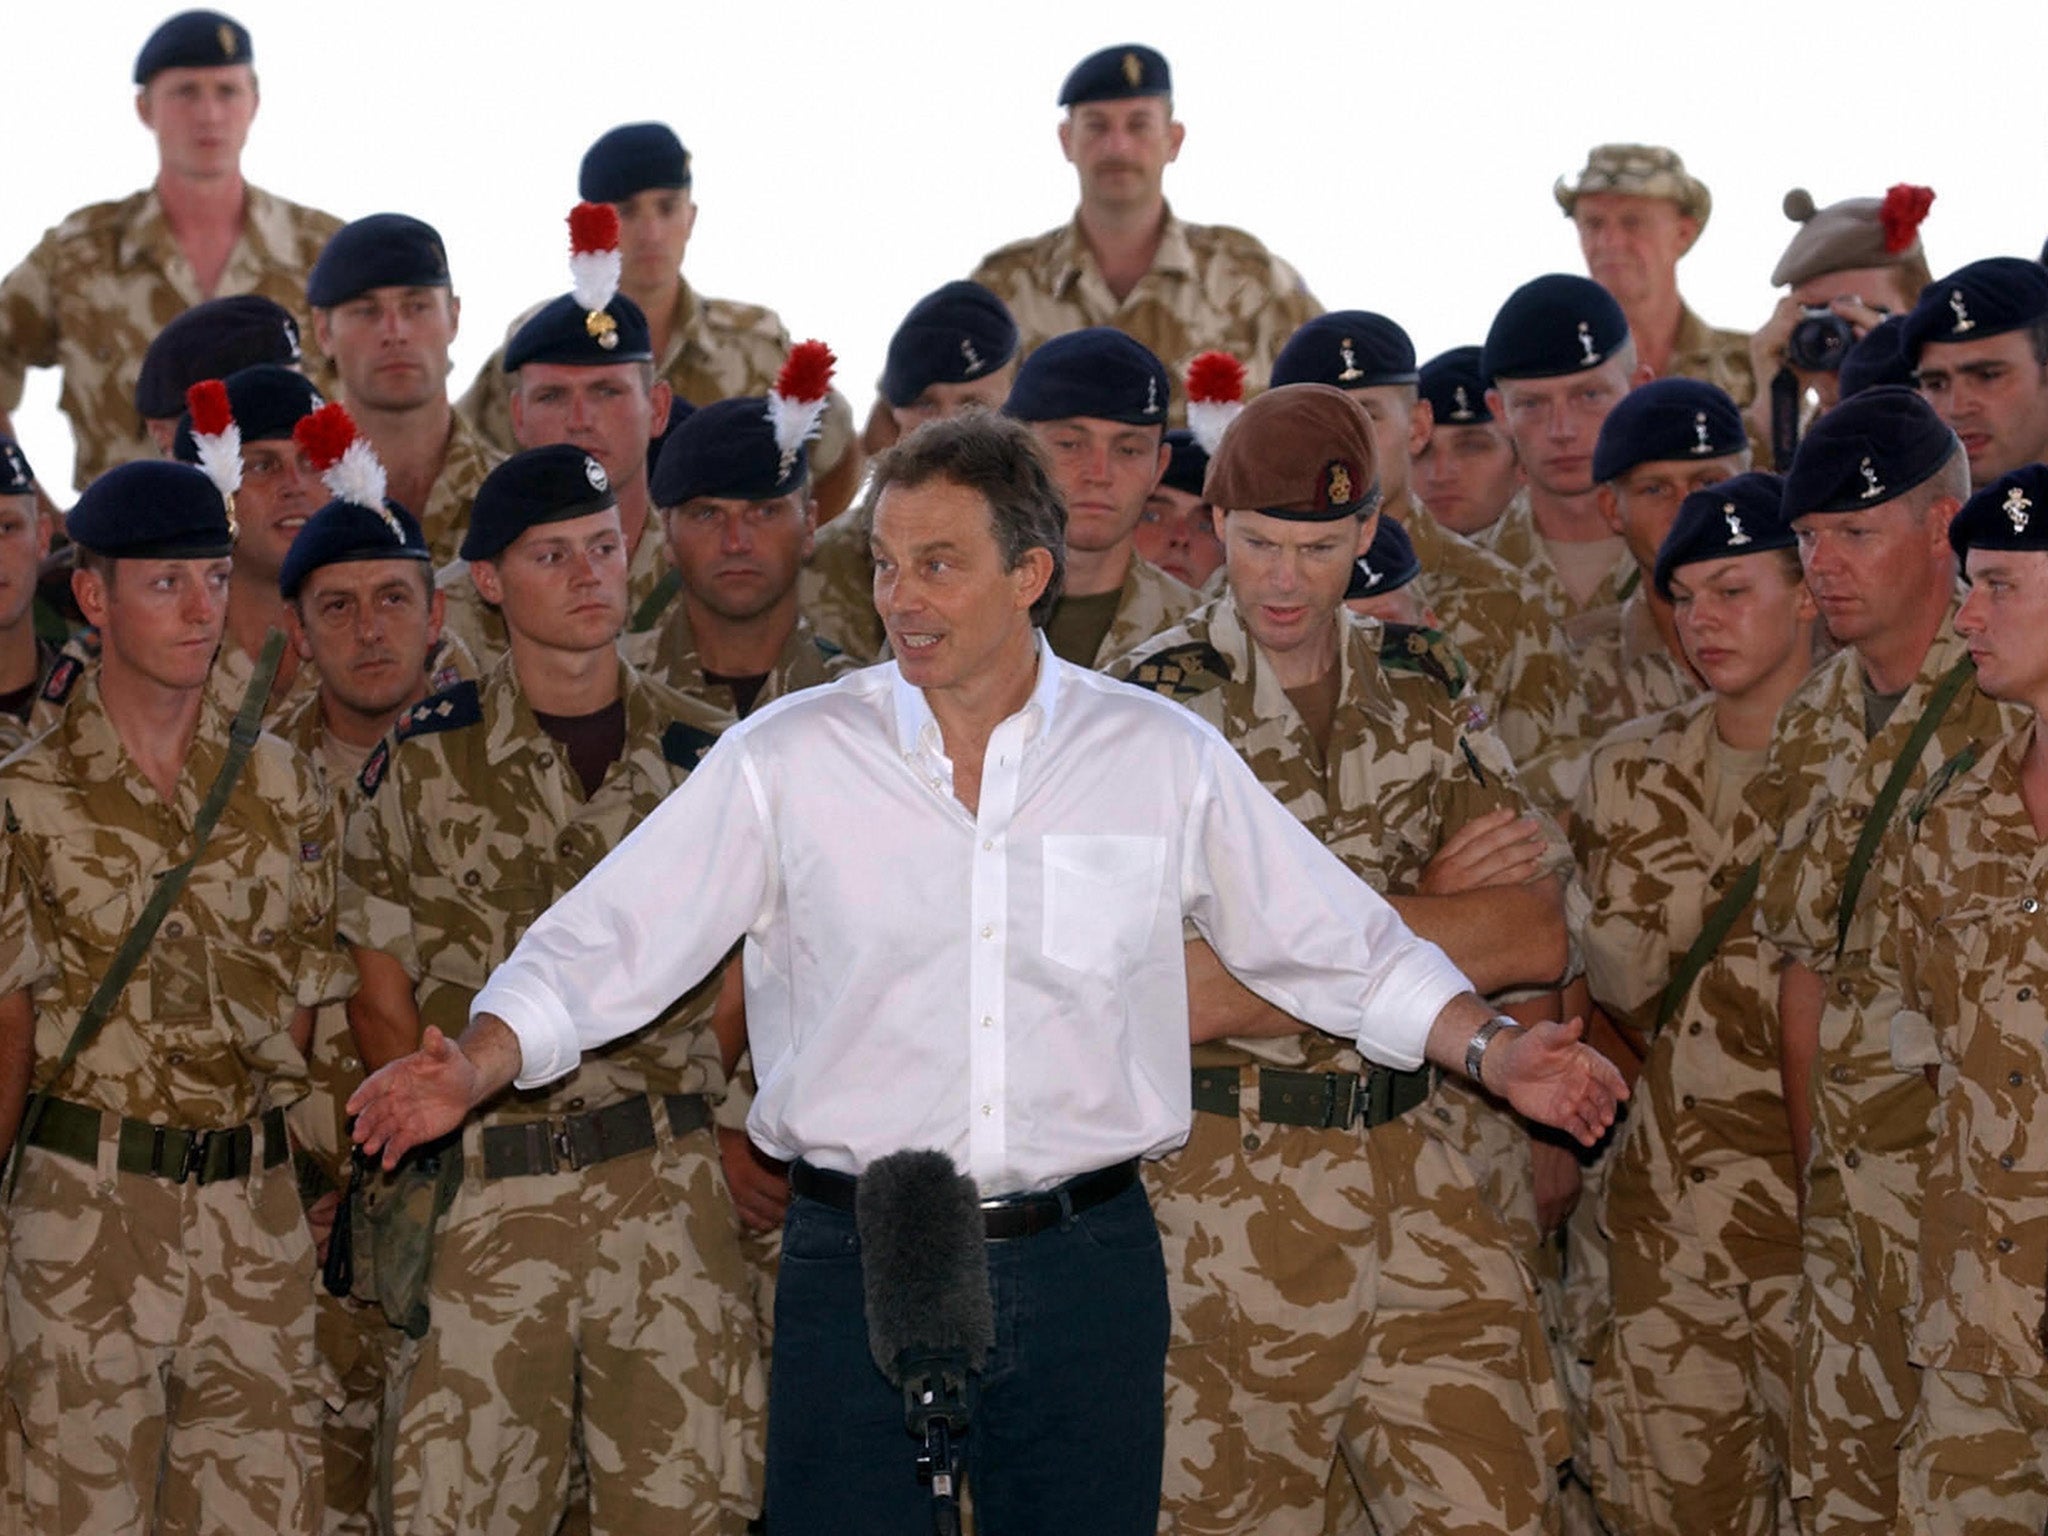 Tony Blair addressing troops in Basra in 2003